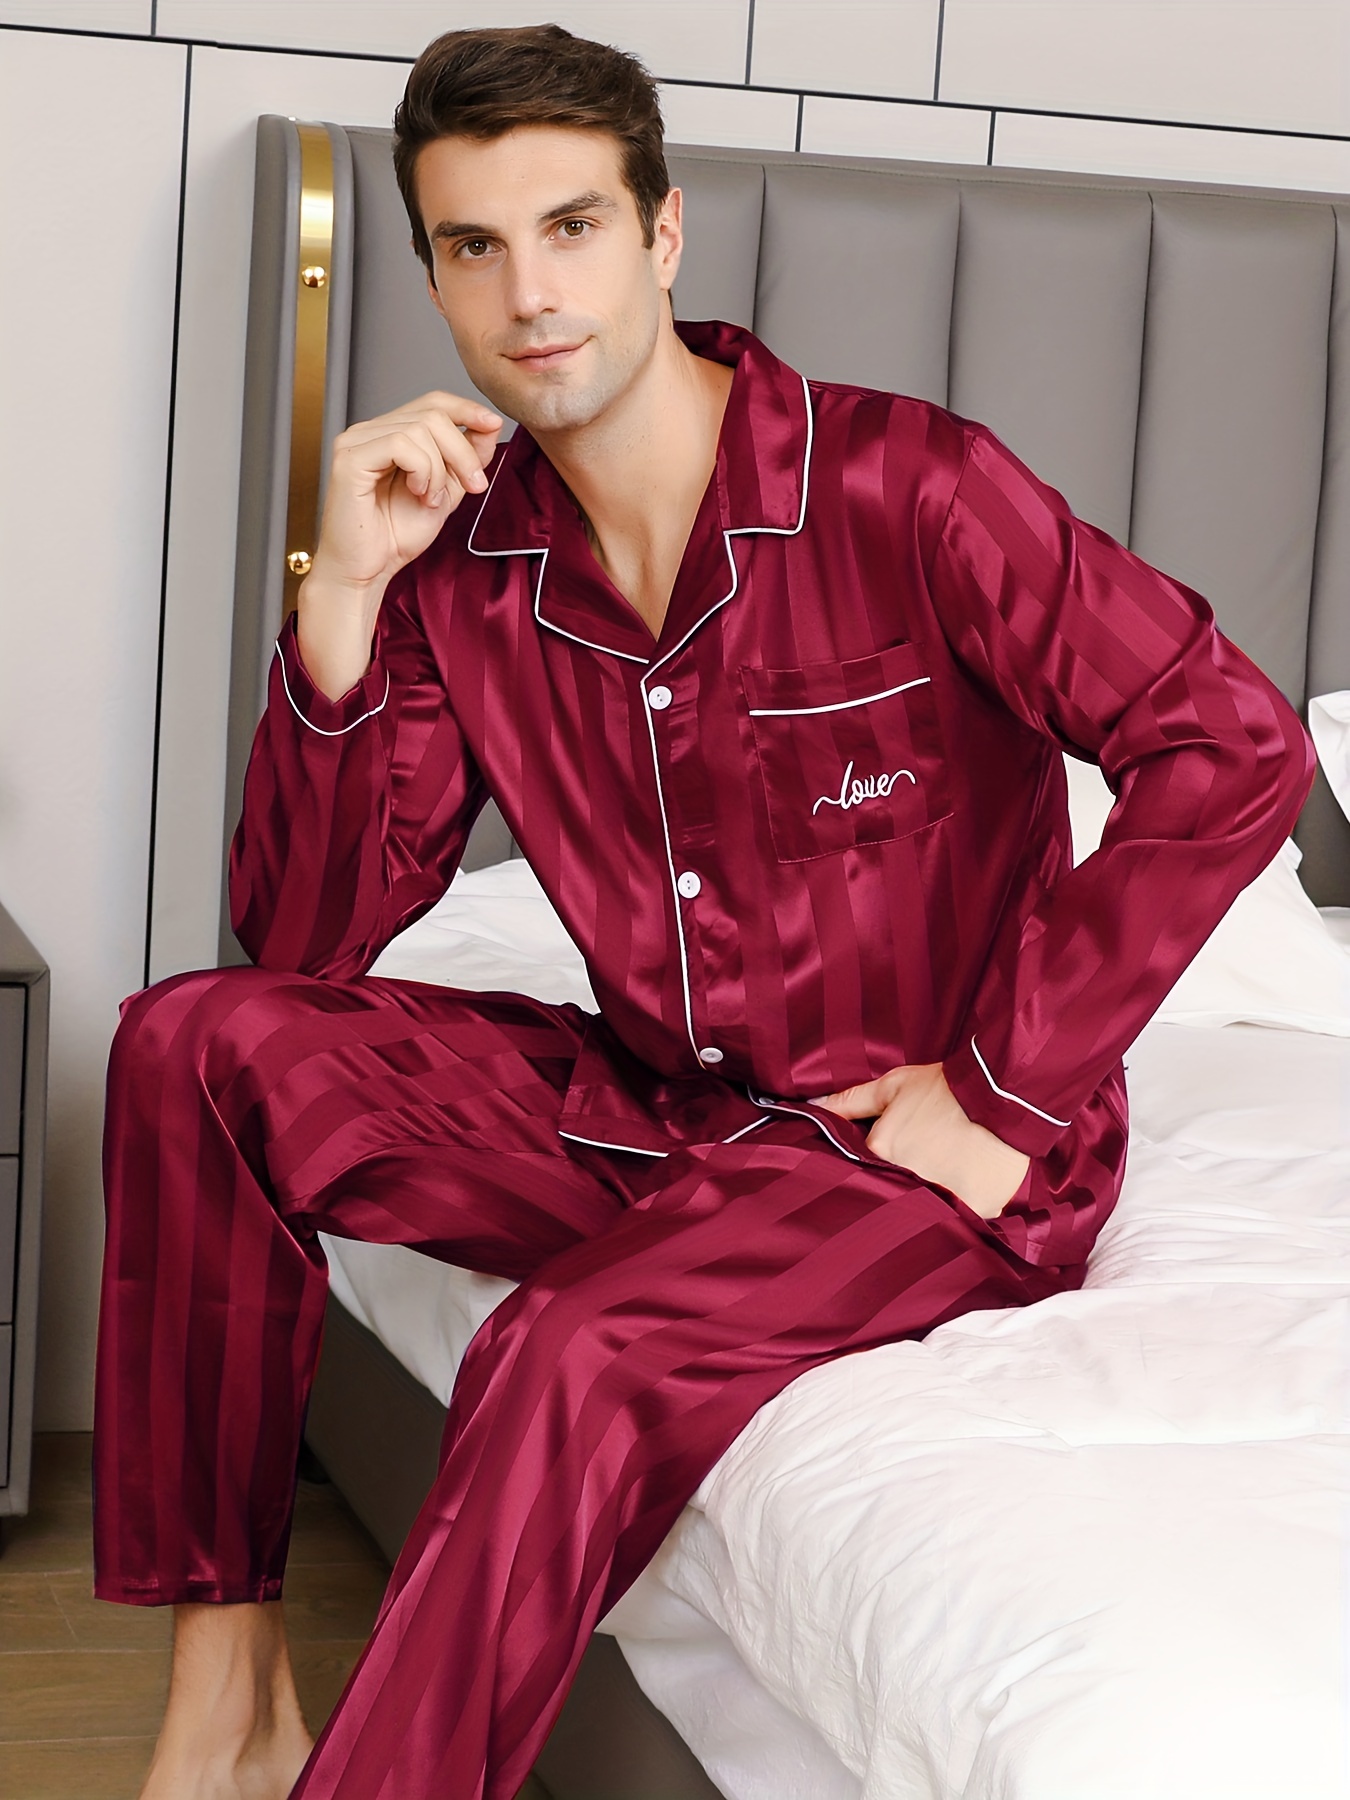 Pantalones Pijama Hombre Pijamas Dormitorio Cuadros Suaves - Temu